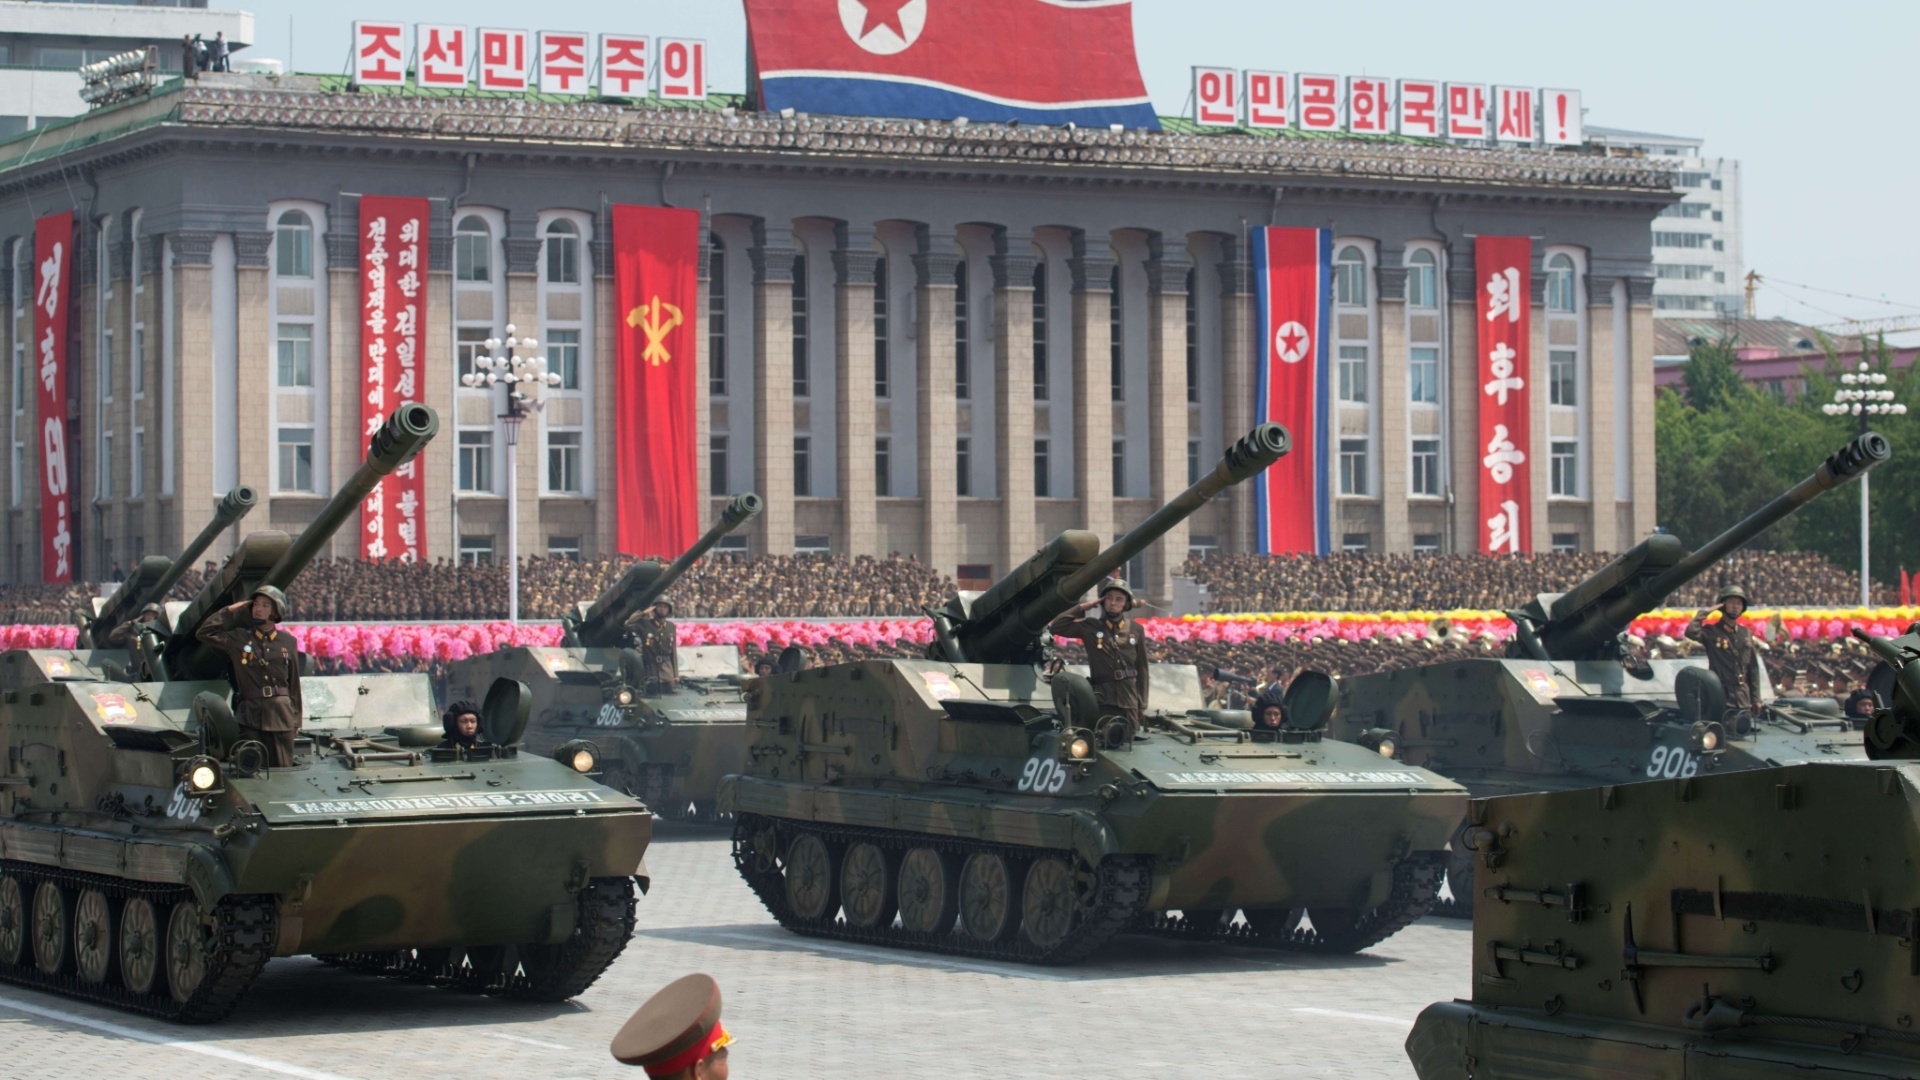 27jul2013---tanques-norte-coreanos-participam-do-tradicional-desfile-de-aniversario-do-fim-da-guerra-das-coreias-1950-53-na-praca-kim-il-sung-em-pyongyang-coreia-do-norte-1374913624708_1920x1080.jpg